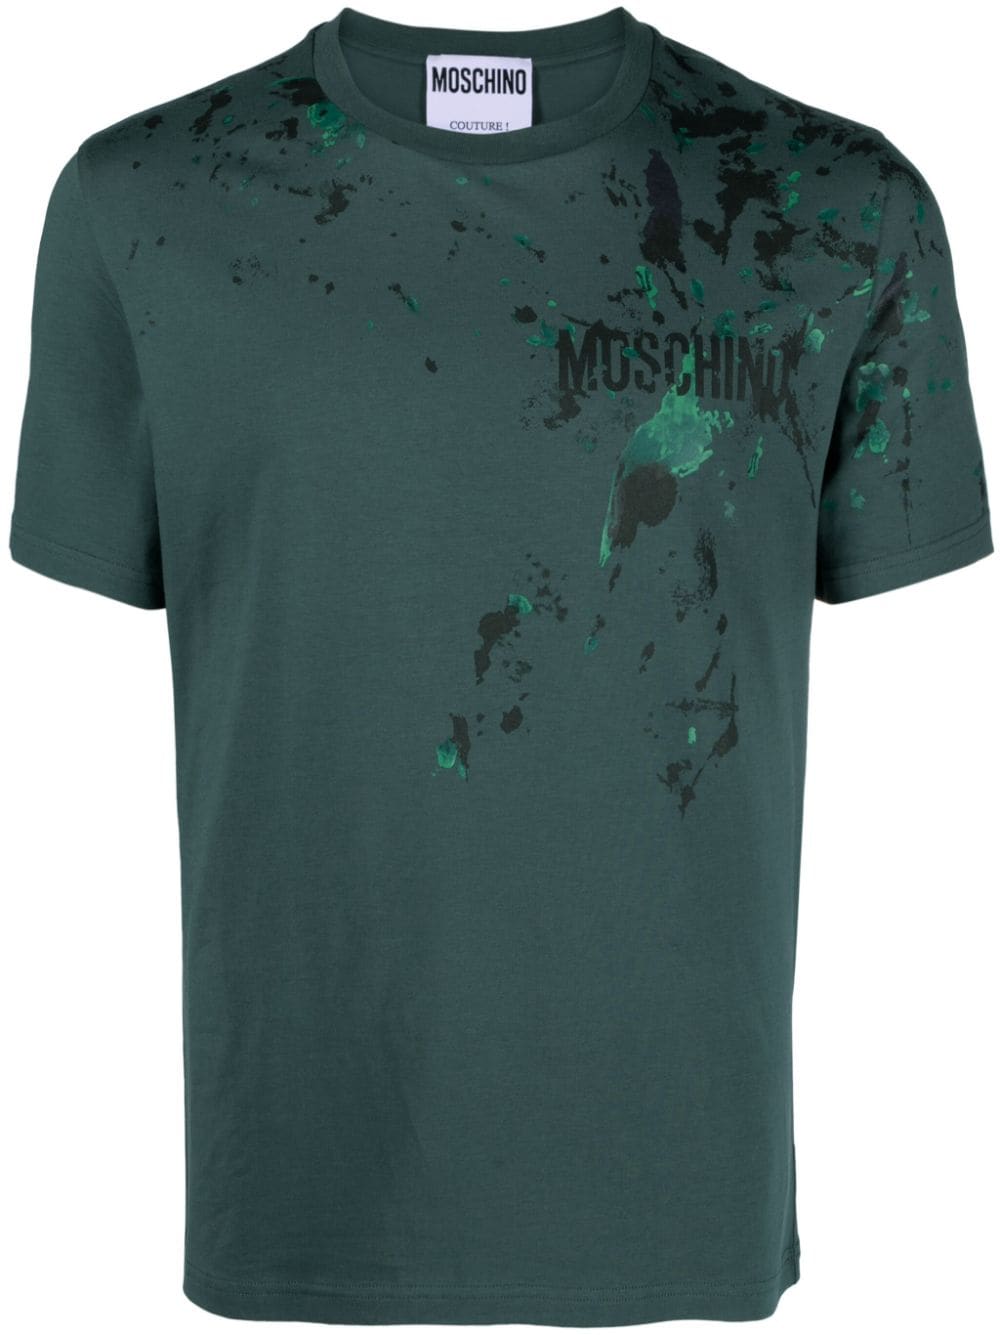 Moschino T-Shirt mit Farbklecks-Print - Grün von Moschino